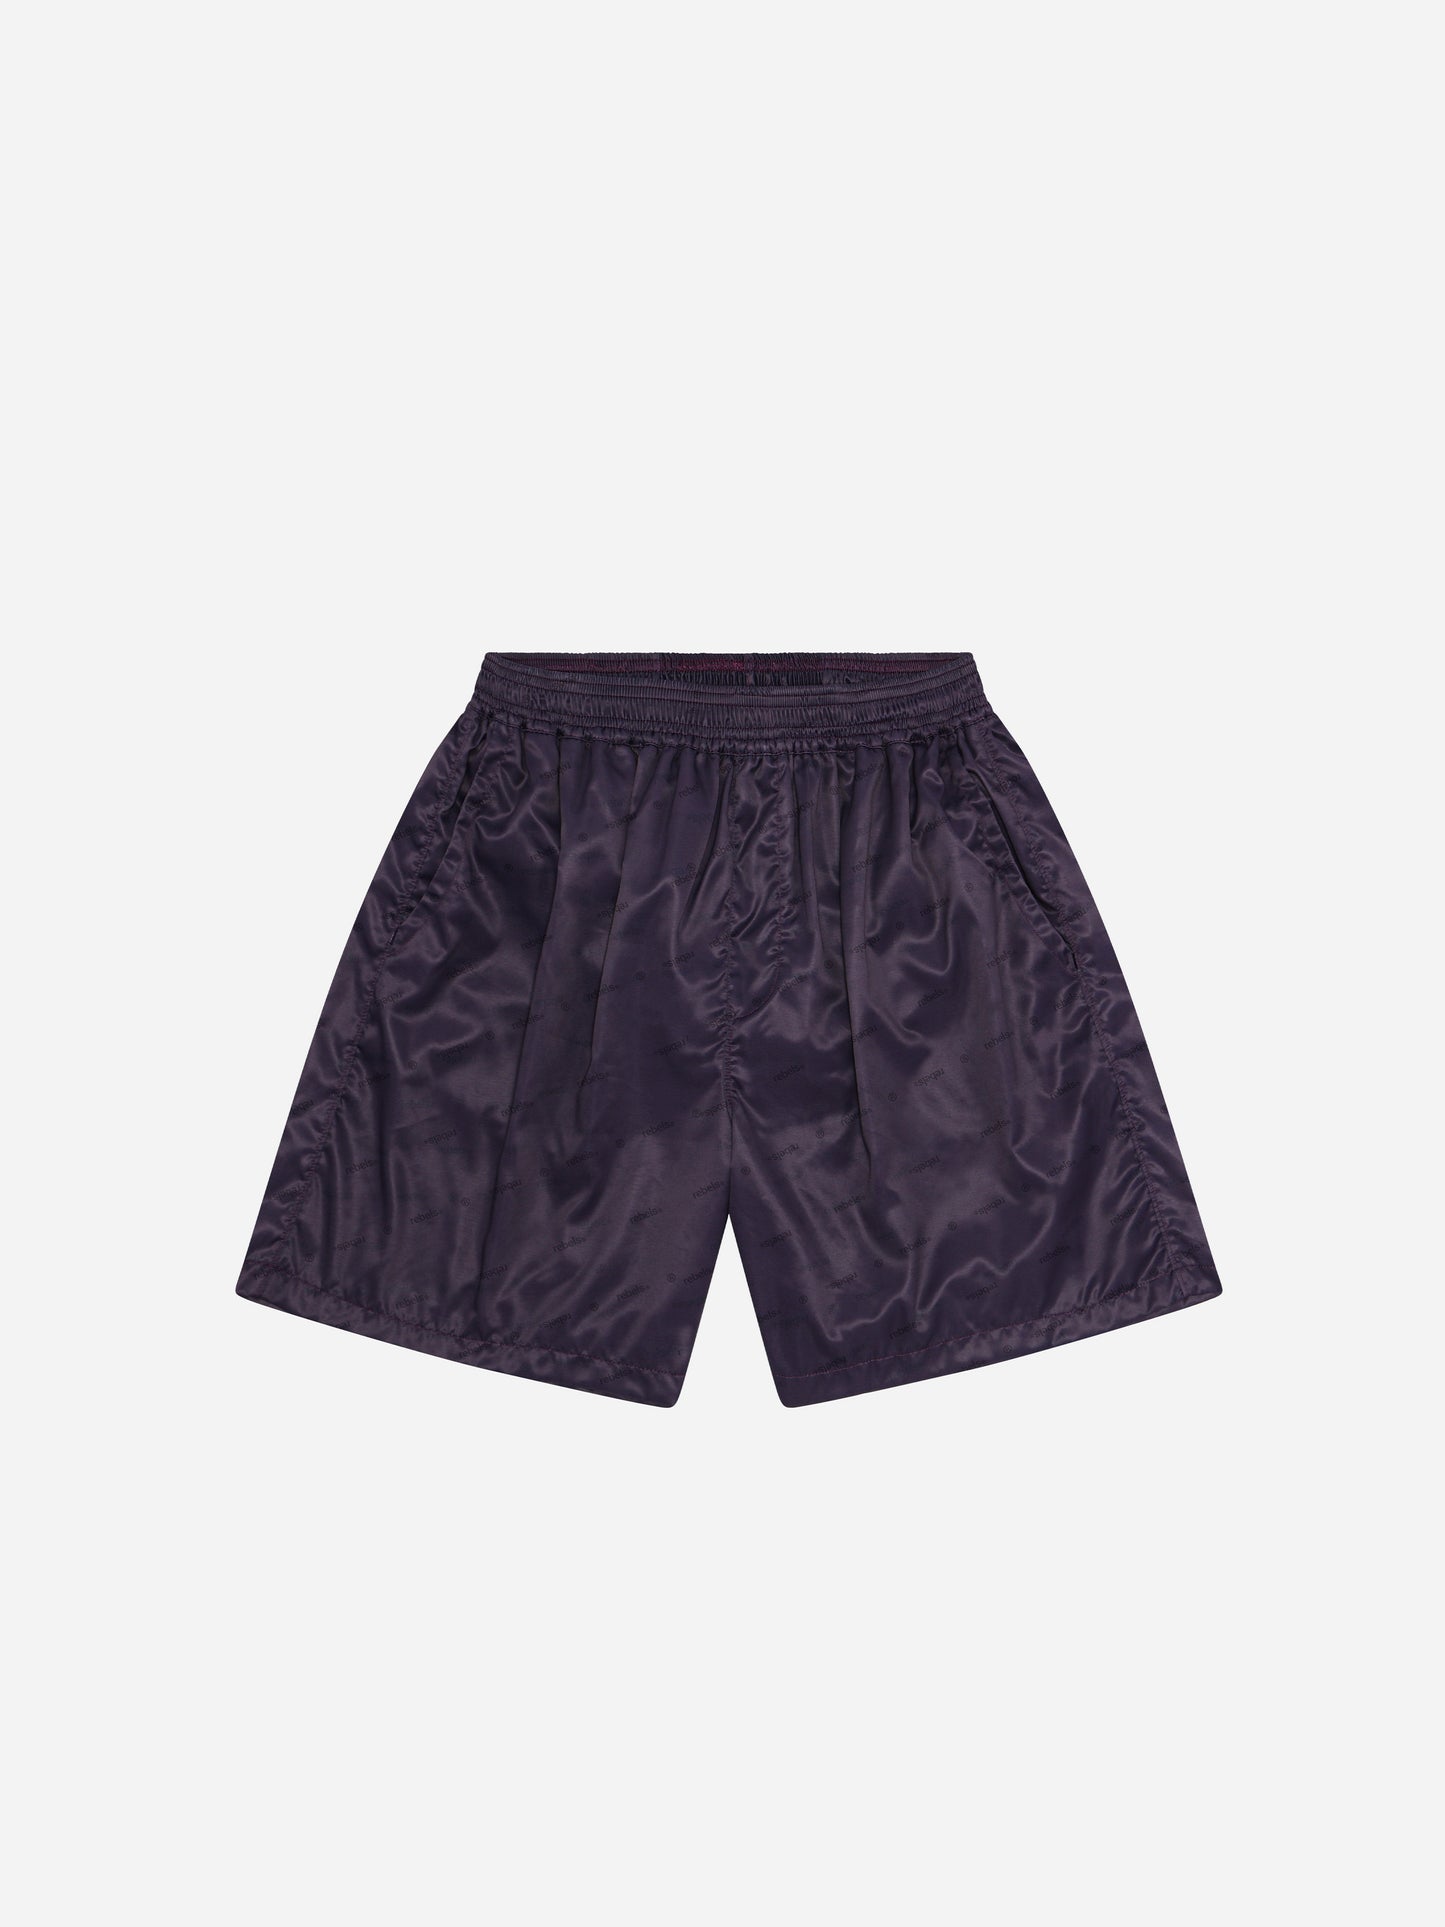 Hybrid shorts v2 - Purple